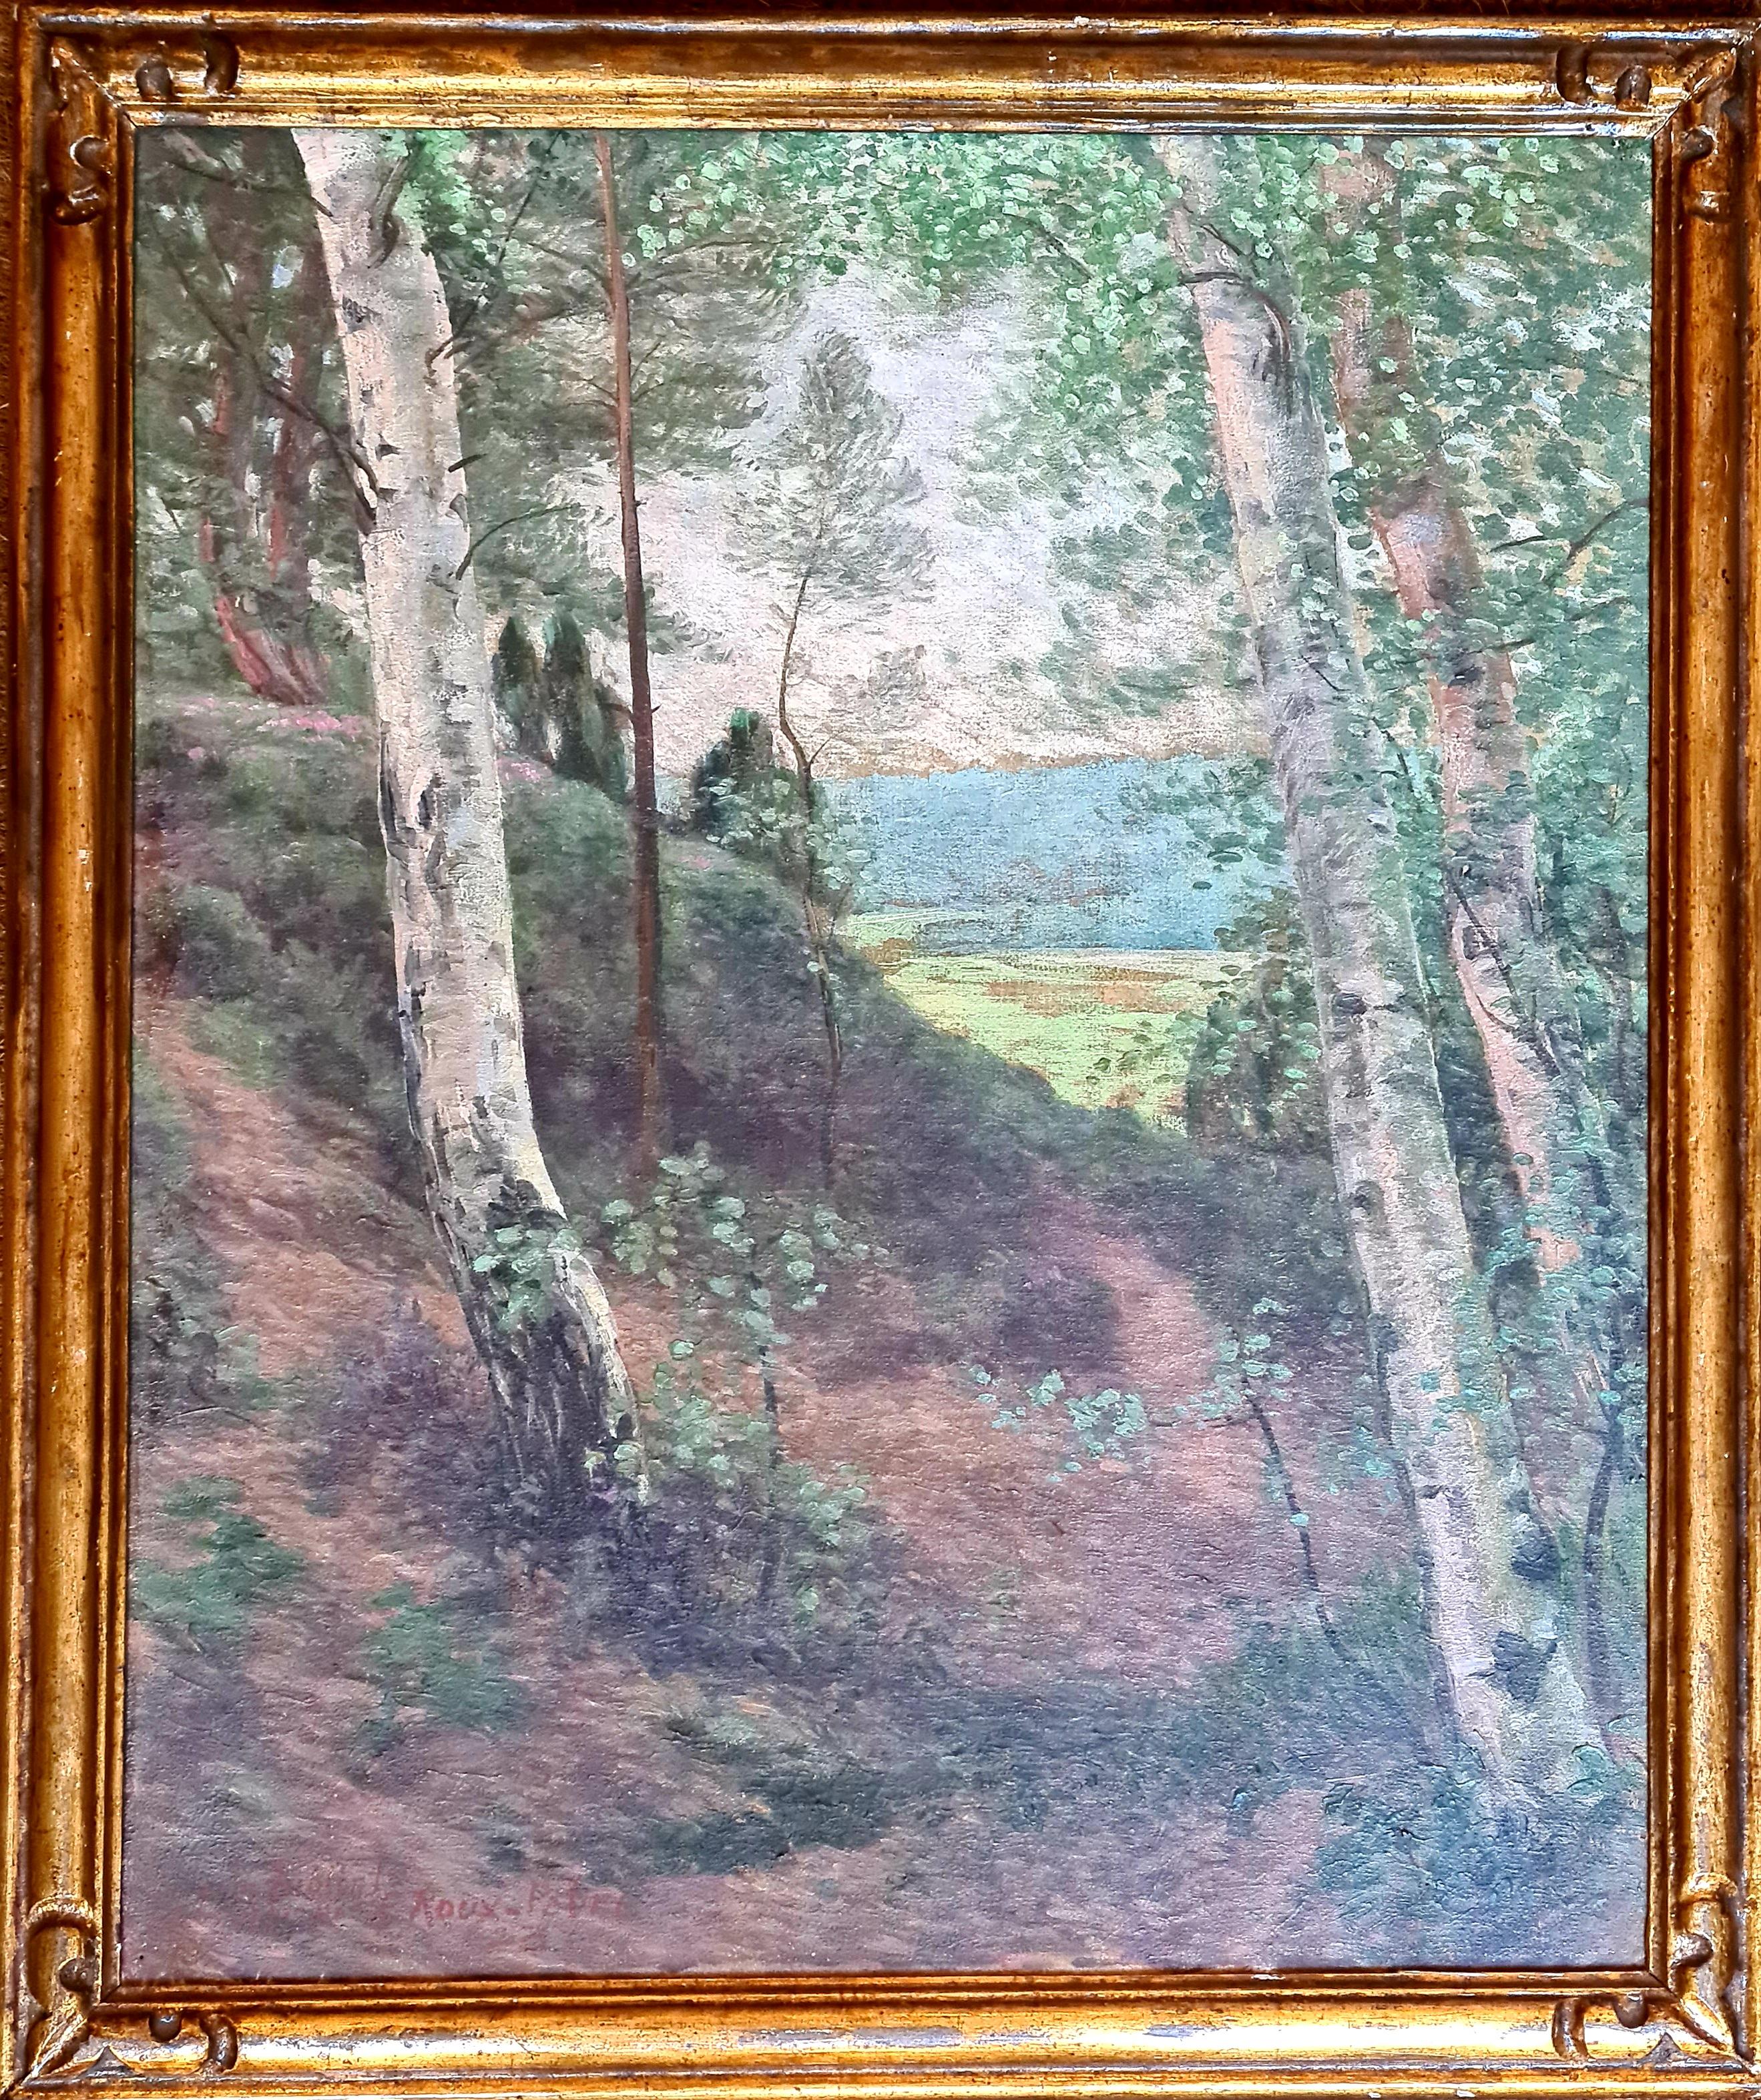 Landscape Painting Emile Roux Fabre - La Forêt, grande école de Barbizon, huile sur toile - paysage en bois